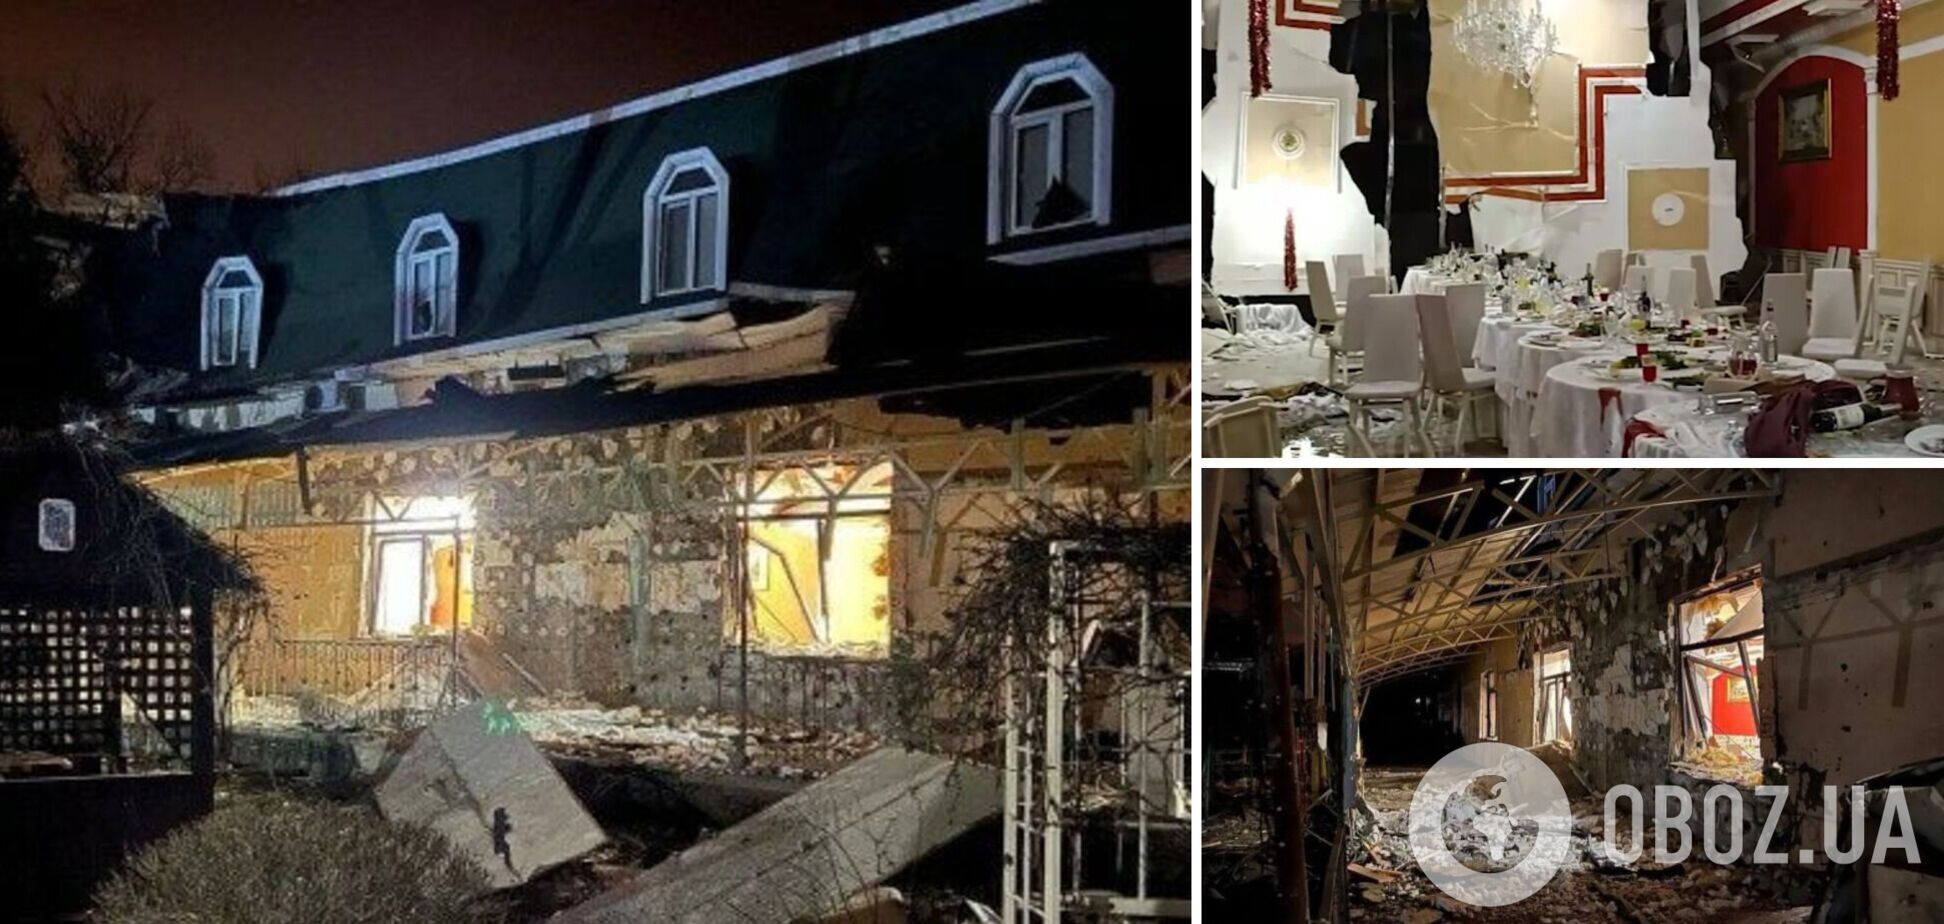 Не только Рогозин: всплыли подробности о топ-чиновниках, пострадавших при обстреле ресторана в Донецке